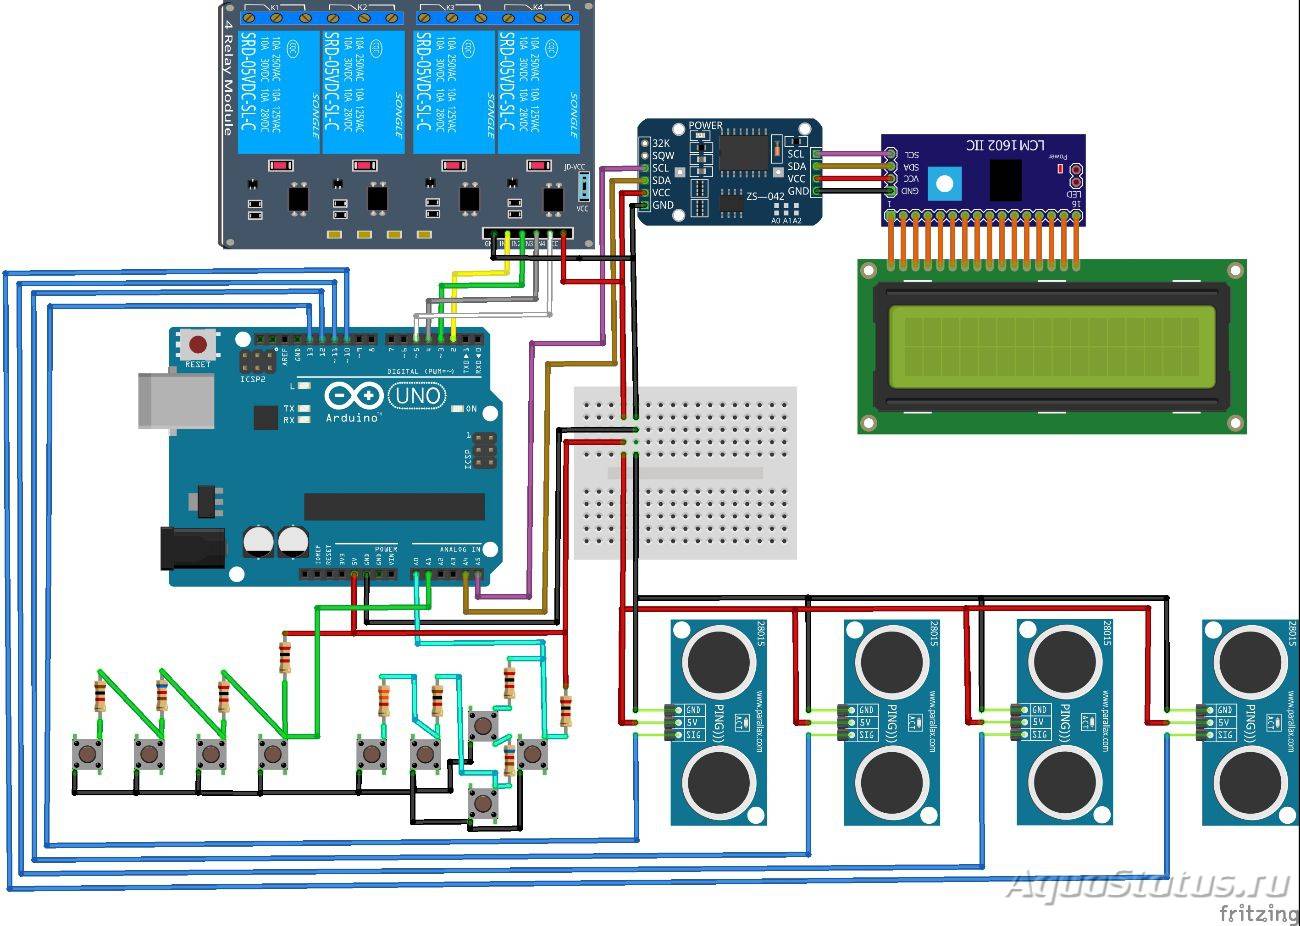 Умный дом на базе arduino своими руками: подключаемые модули и настройка системы